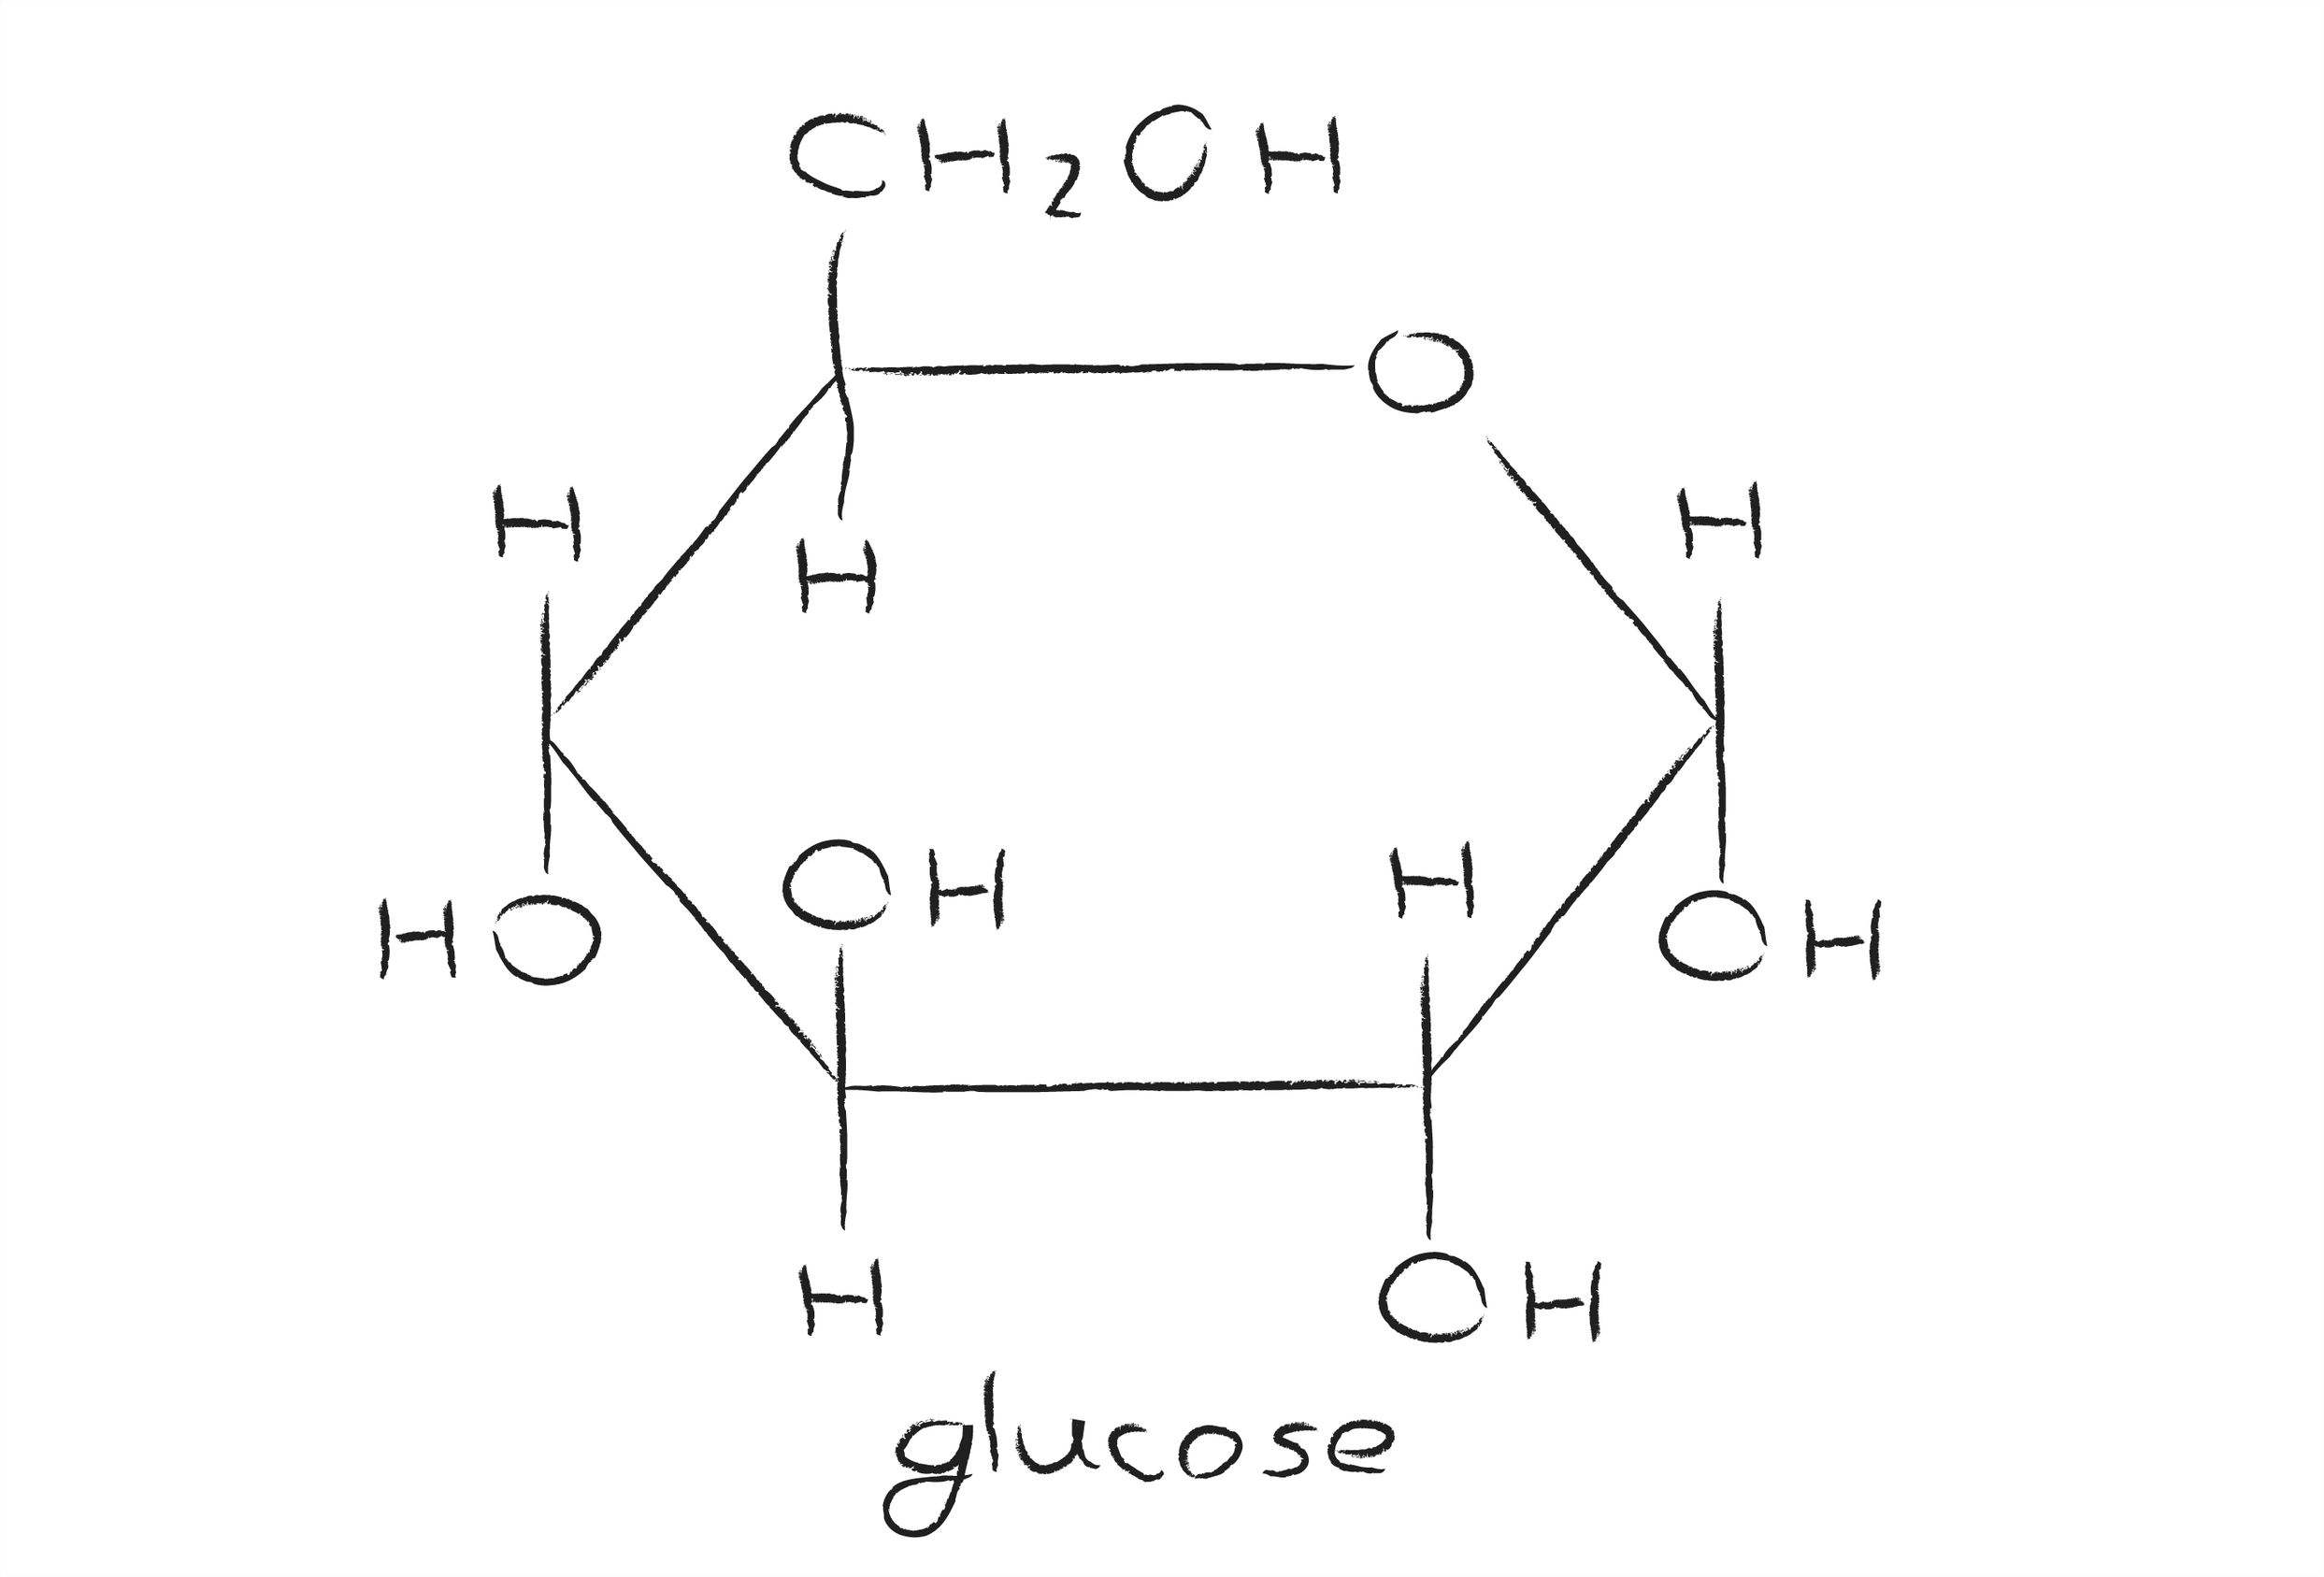 Atomic mass of glucose in amu